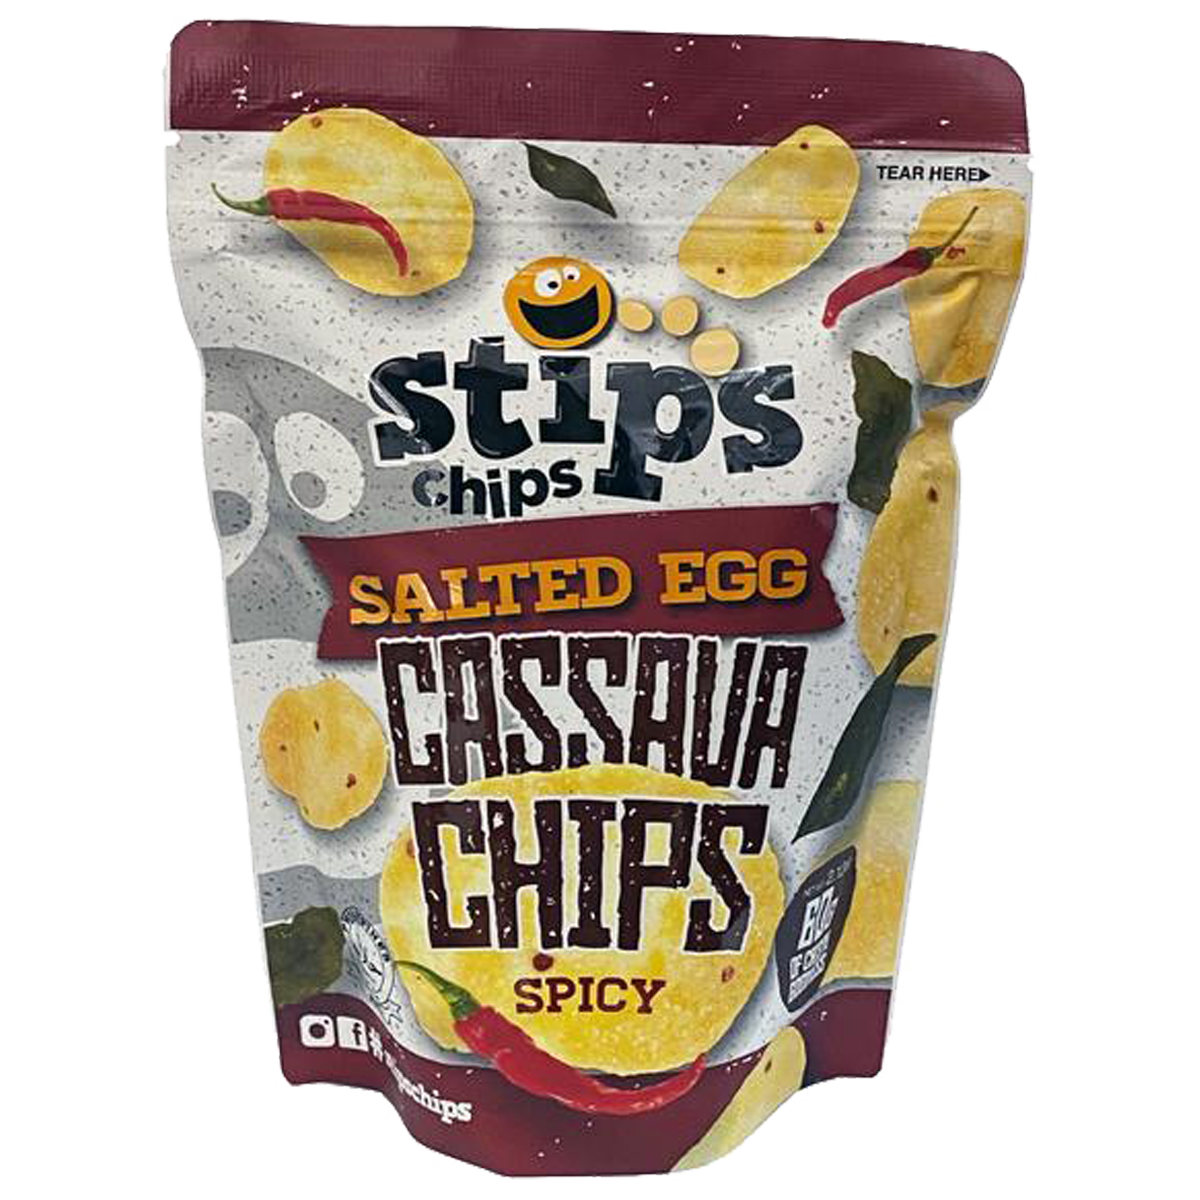 Stip’s Chips Salted Egg Cassava Chips Spicy 60g